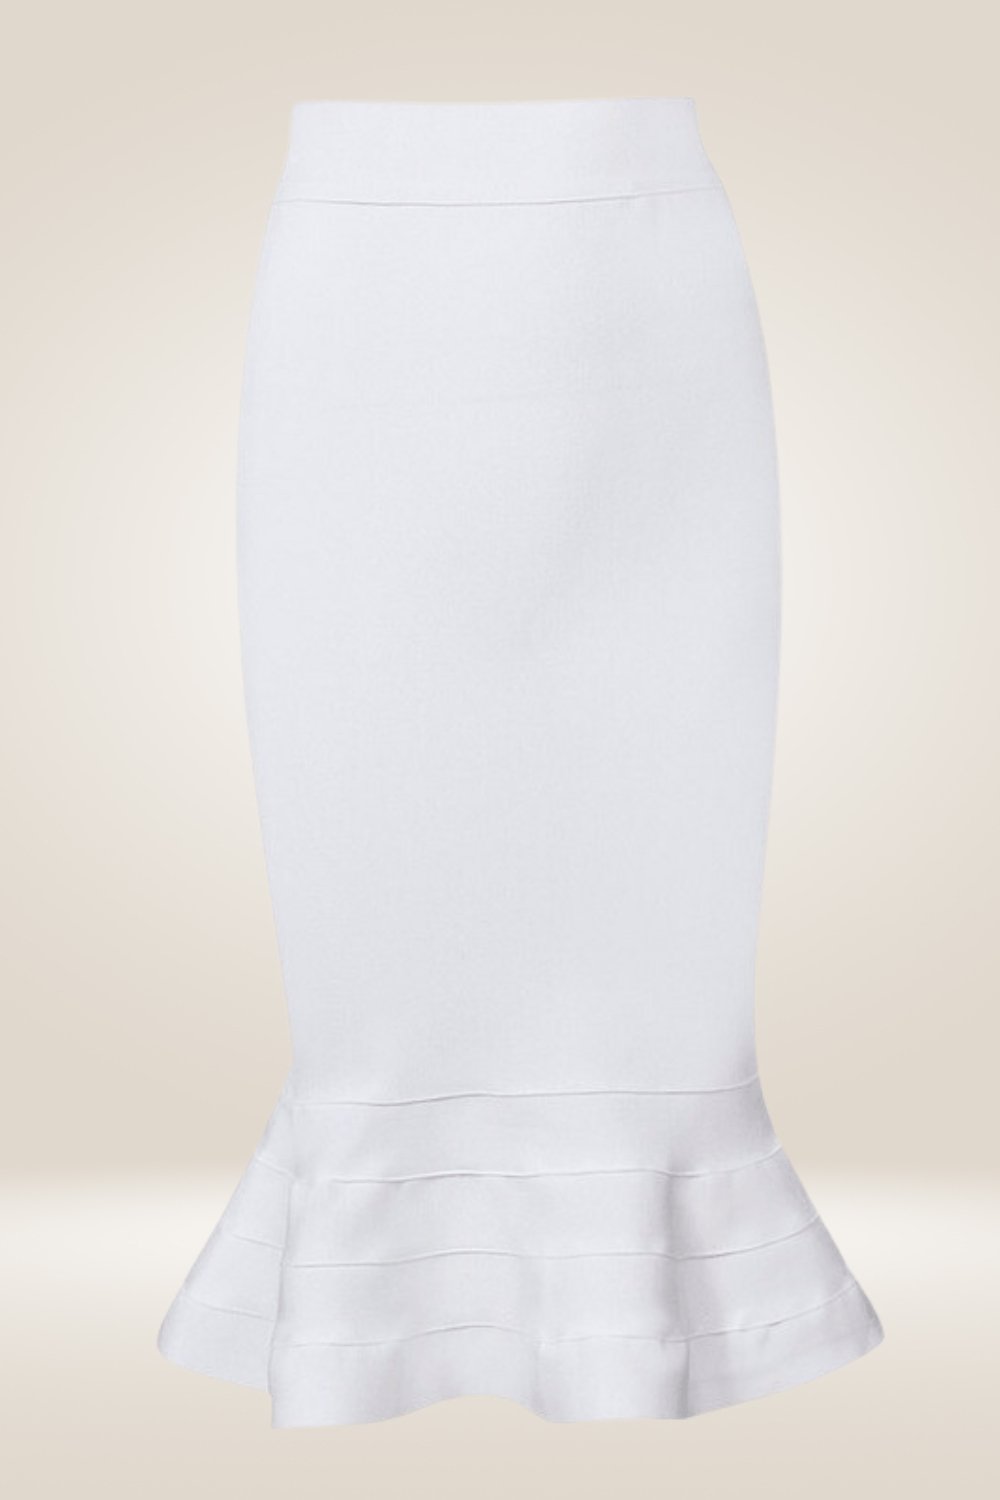 Bodycon Mermaid Ruffle Midi Skirt - TGC Boutique - Bodycon skirt